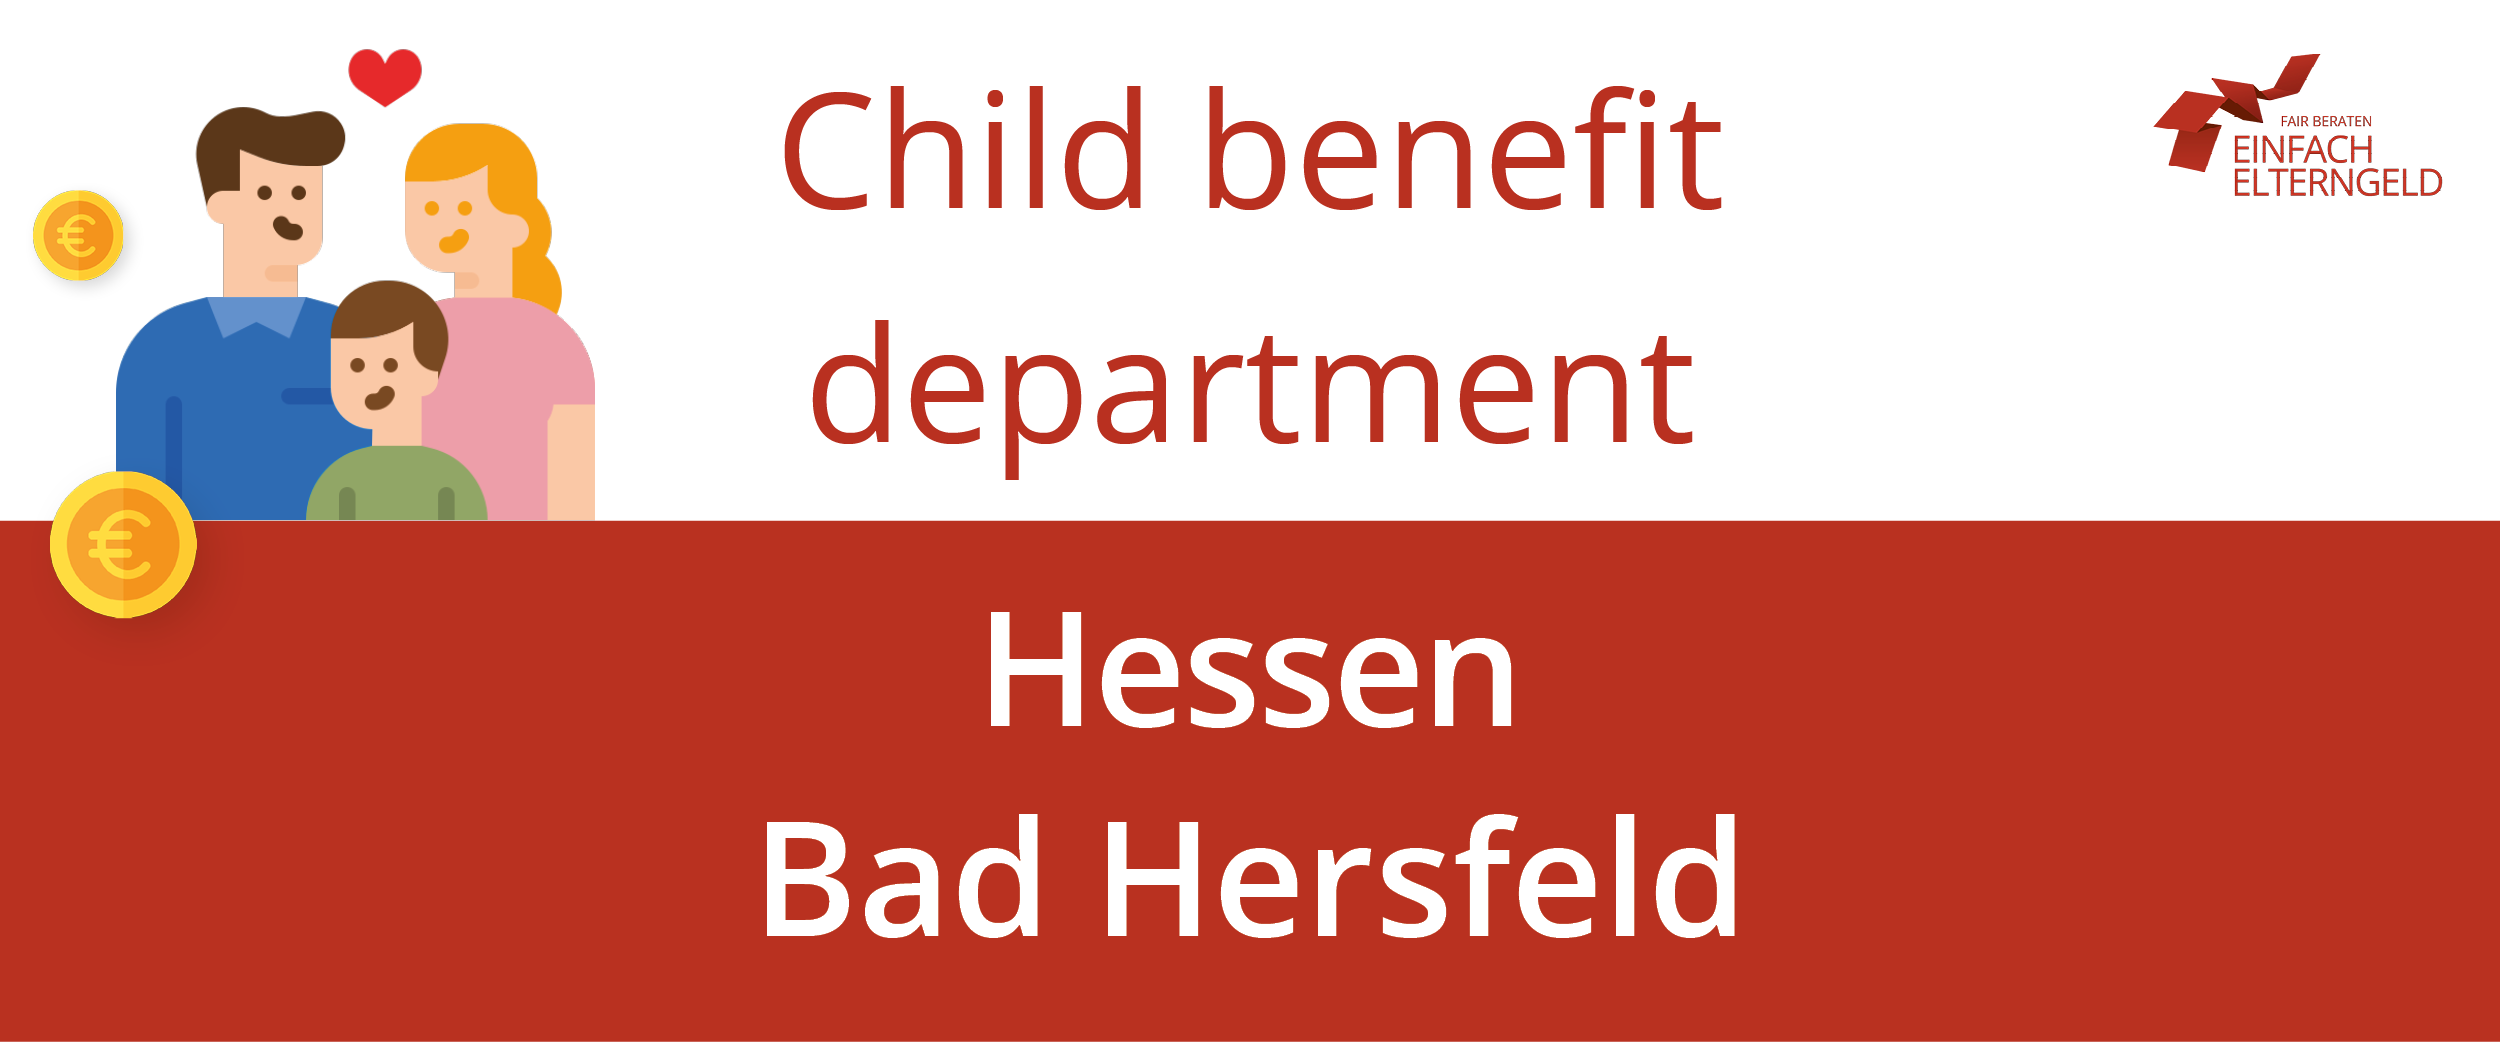 We present you the Child benefit department Hessen Bad Hersfeld.